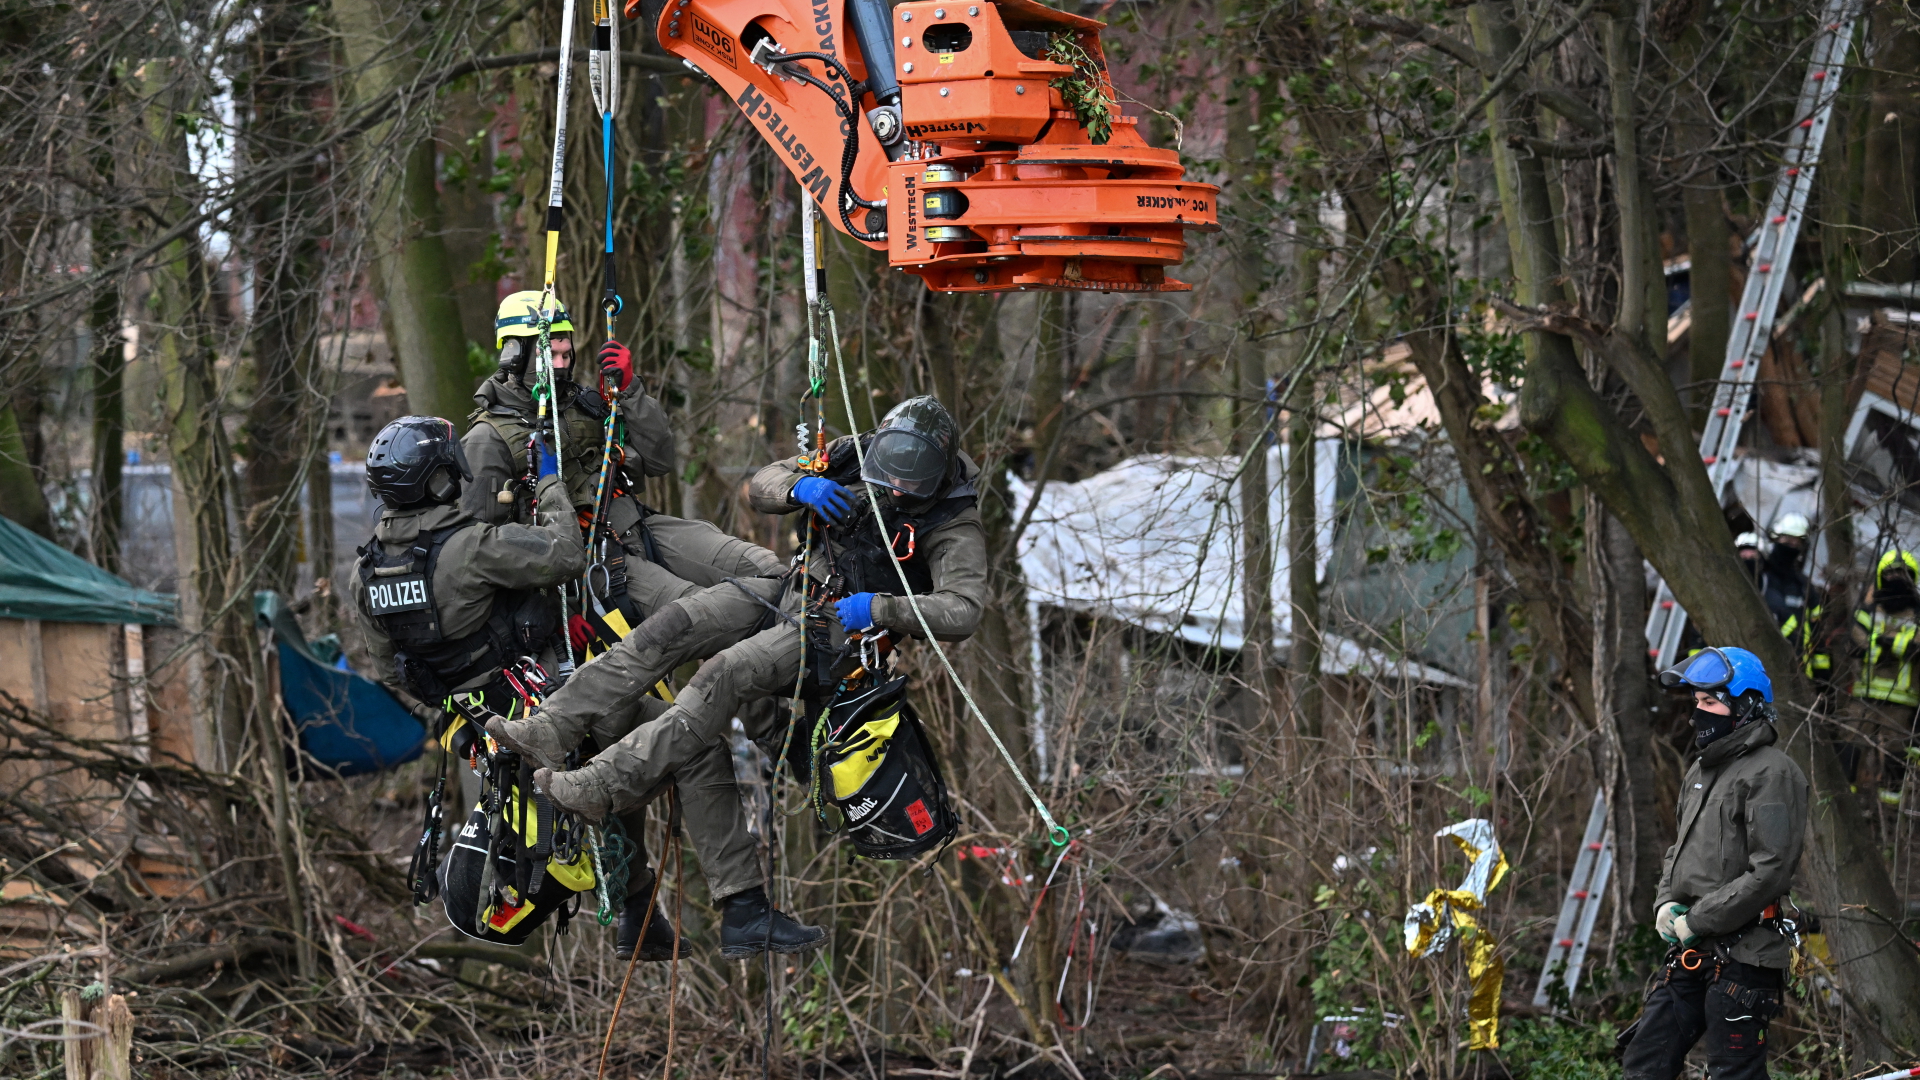 Erkelenz: Polizisten in Kletterausrüstung lassen sich von einer Baumschere anheben, um Klimaaktivisten aus den Bäumen zu holen | dpa